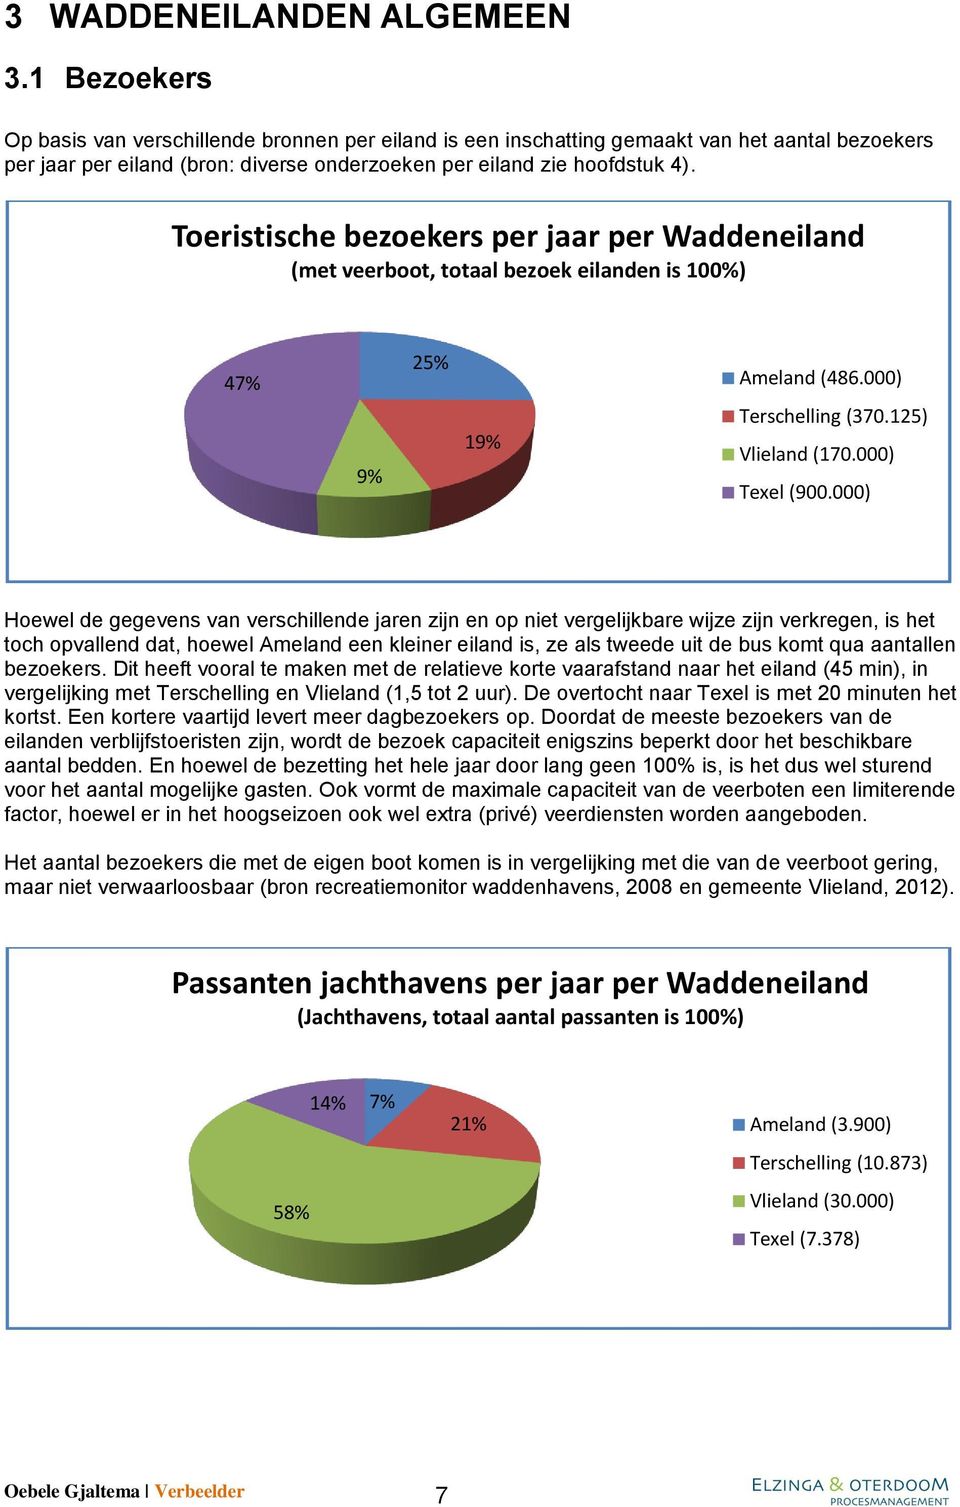 Teristische bezekers per jaar per Waddeneiland (met veerbt, ttaal bezek eilanden is 100%) 47% 9% 25% 19% Ameland (486.000) Terschelling (370.125) Vlieland (170.000) Texel (900.